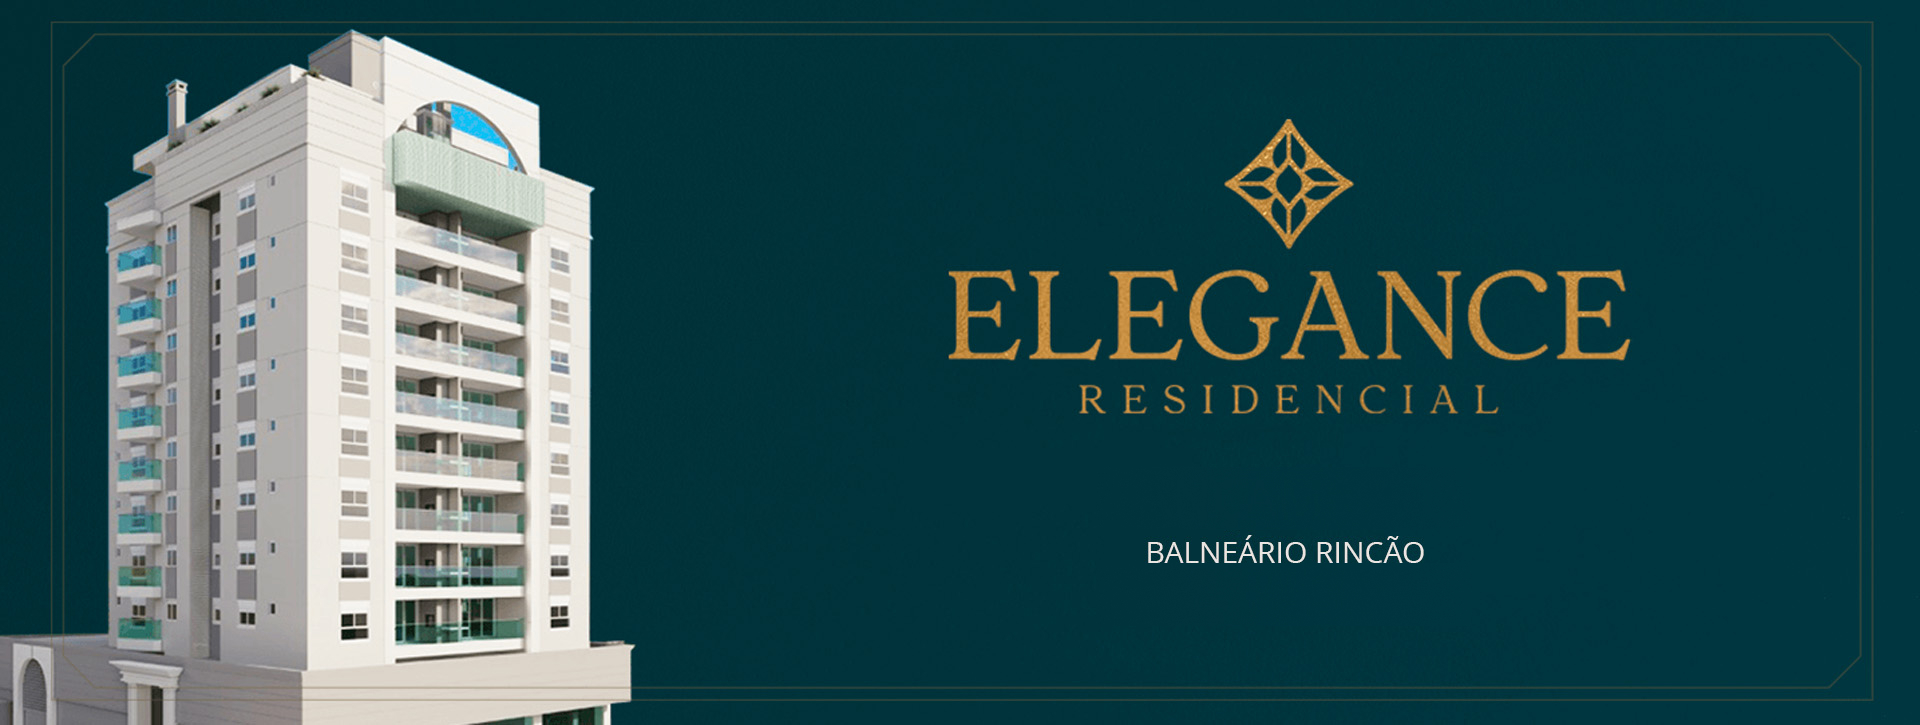 elegance-banner